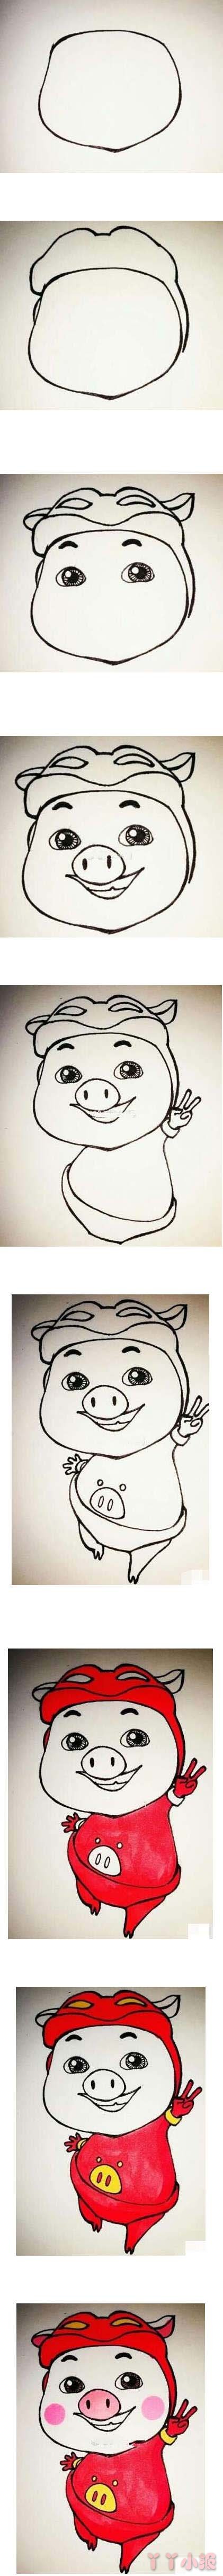   教你一步一步画猪猪侠简笔画教程涂颜色简单